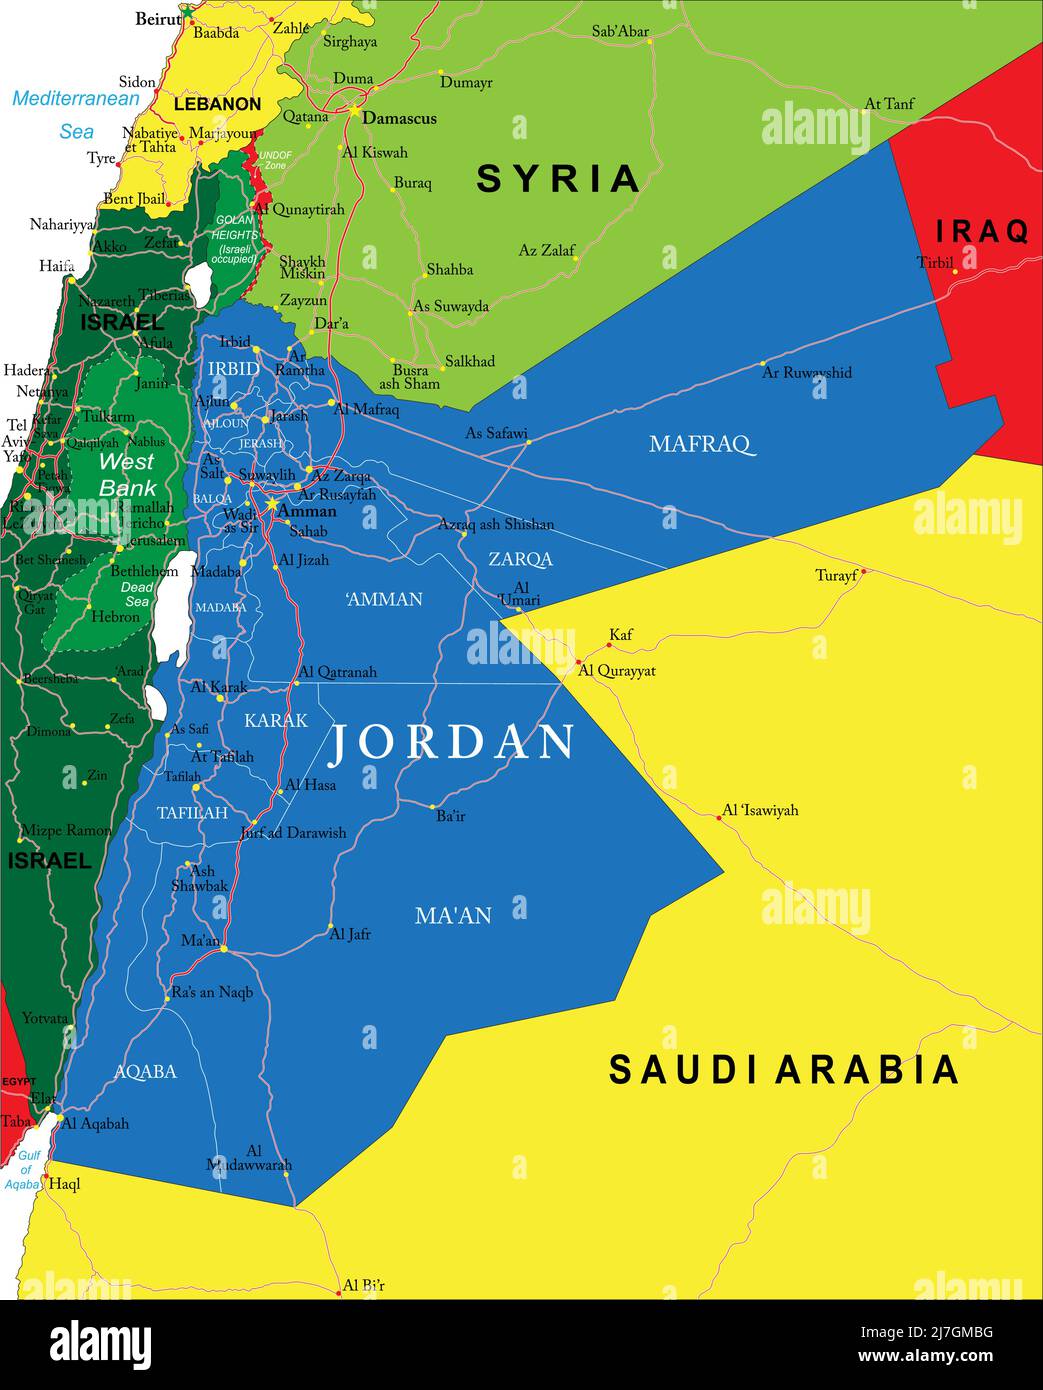 Mappa vettoriale molto dettagliata della Giordania con regioni amministrative, principali città e strade. Illustrazione Vettoriale